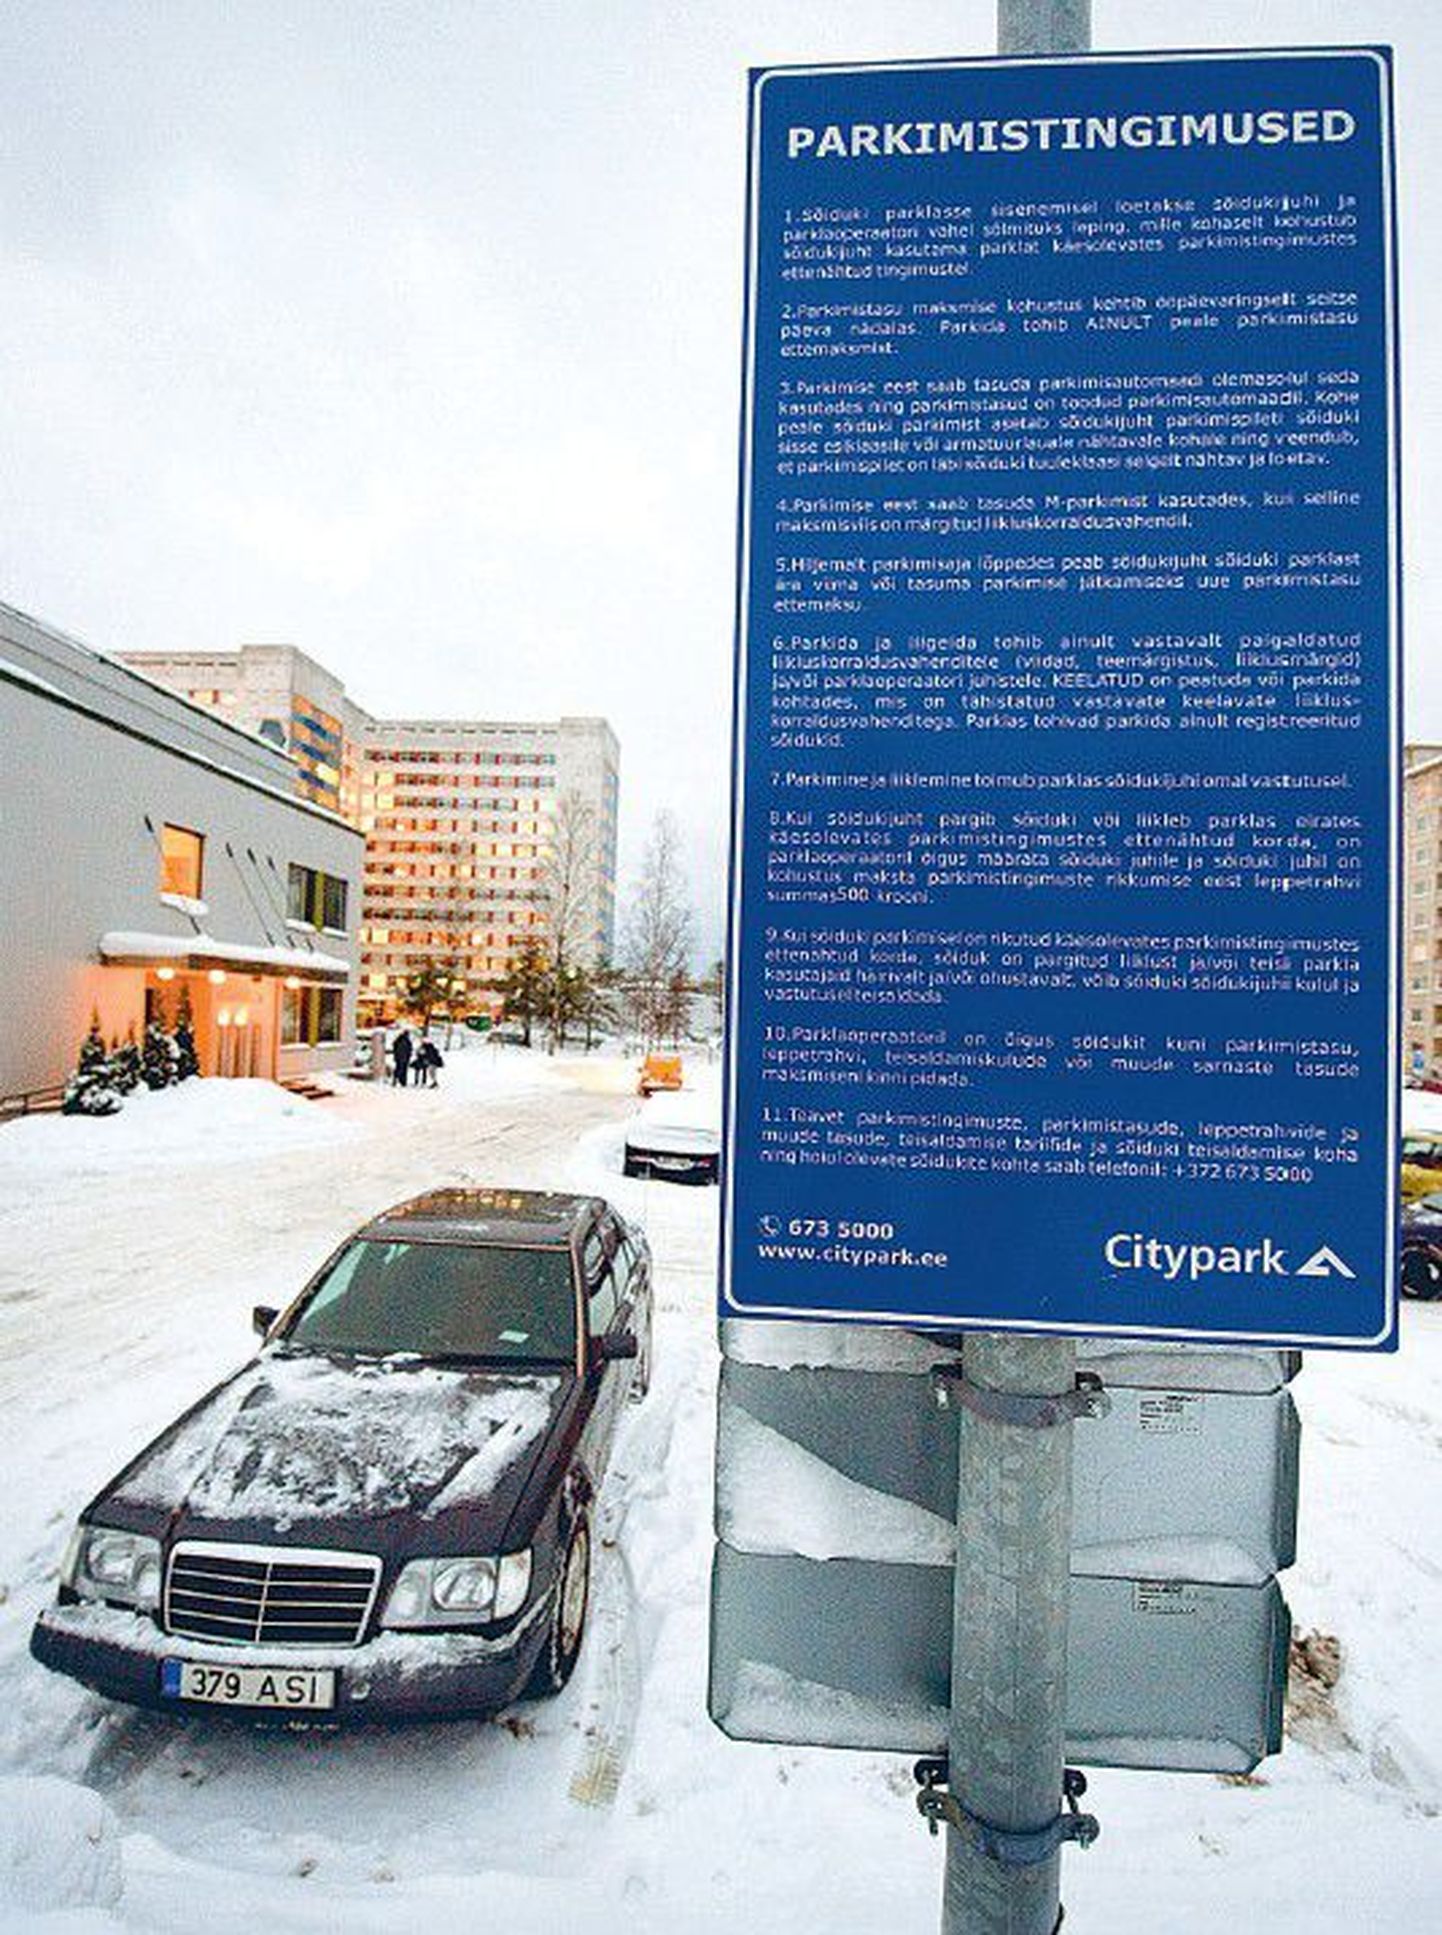 Juristid leiavad, et Citypark, mis korraldab parkimist muu hulgas ka Mustamäel Põhja-Eesti regionaalhaigla juures, määrab kehtetuid leppetrahve, mida tuleks lihtsalt eirata.